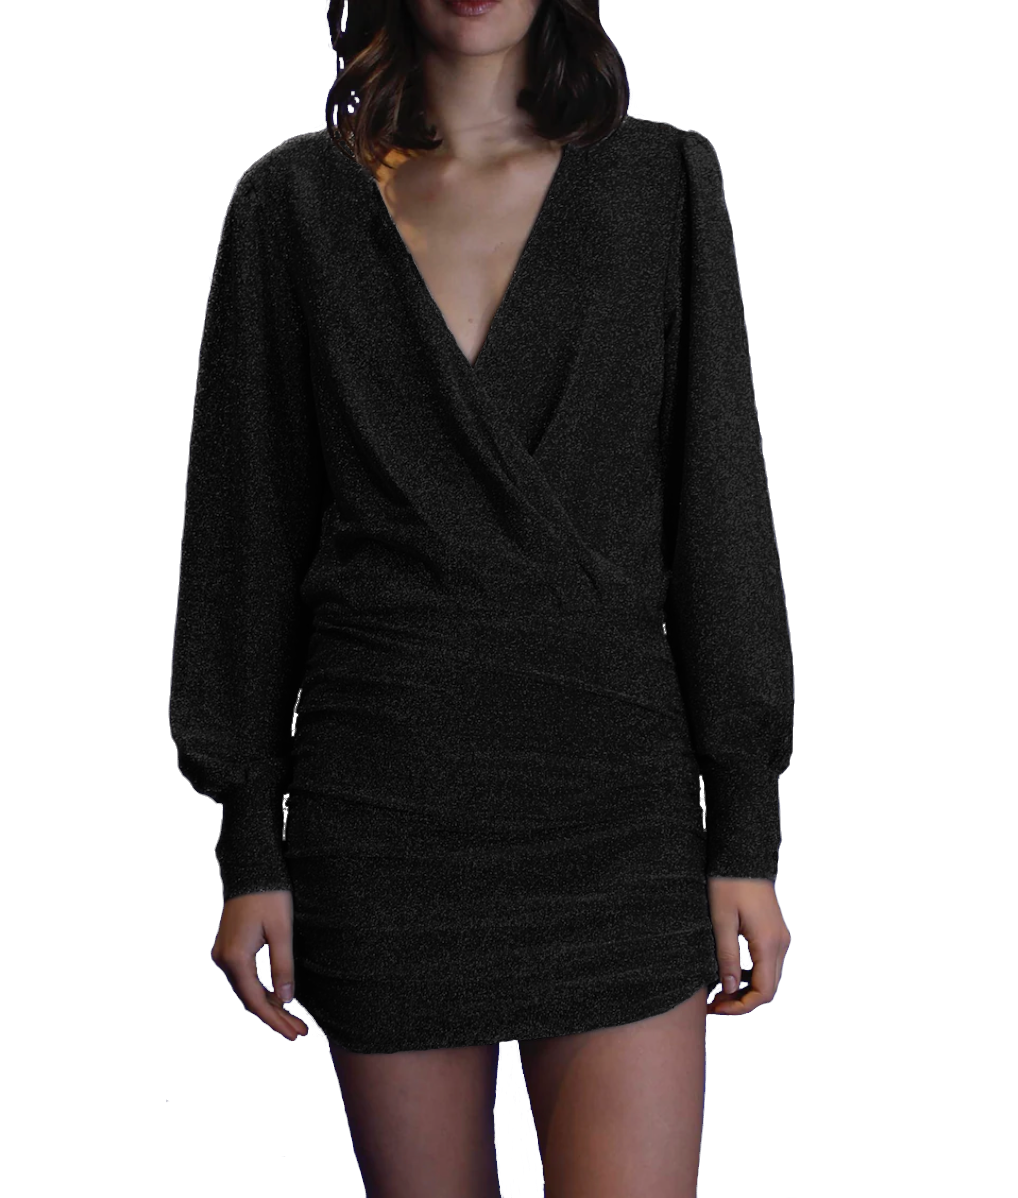 ZOE - short dress in black lurex